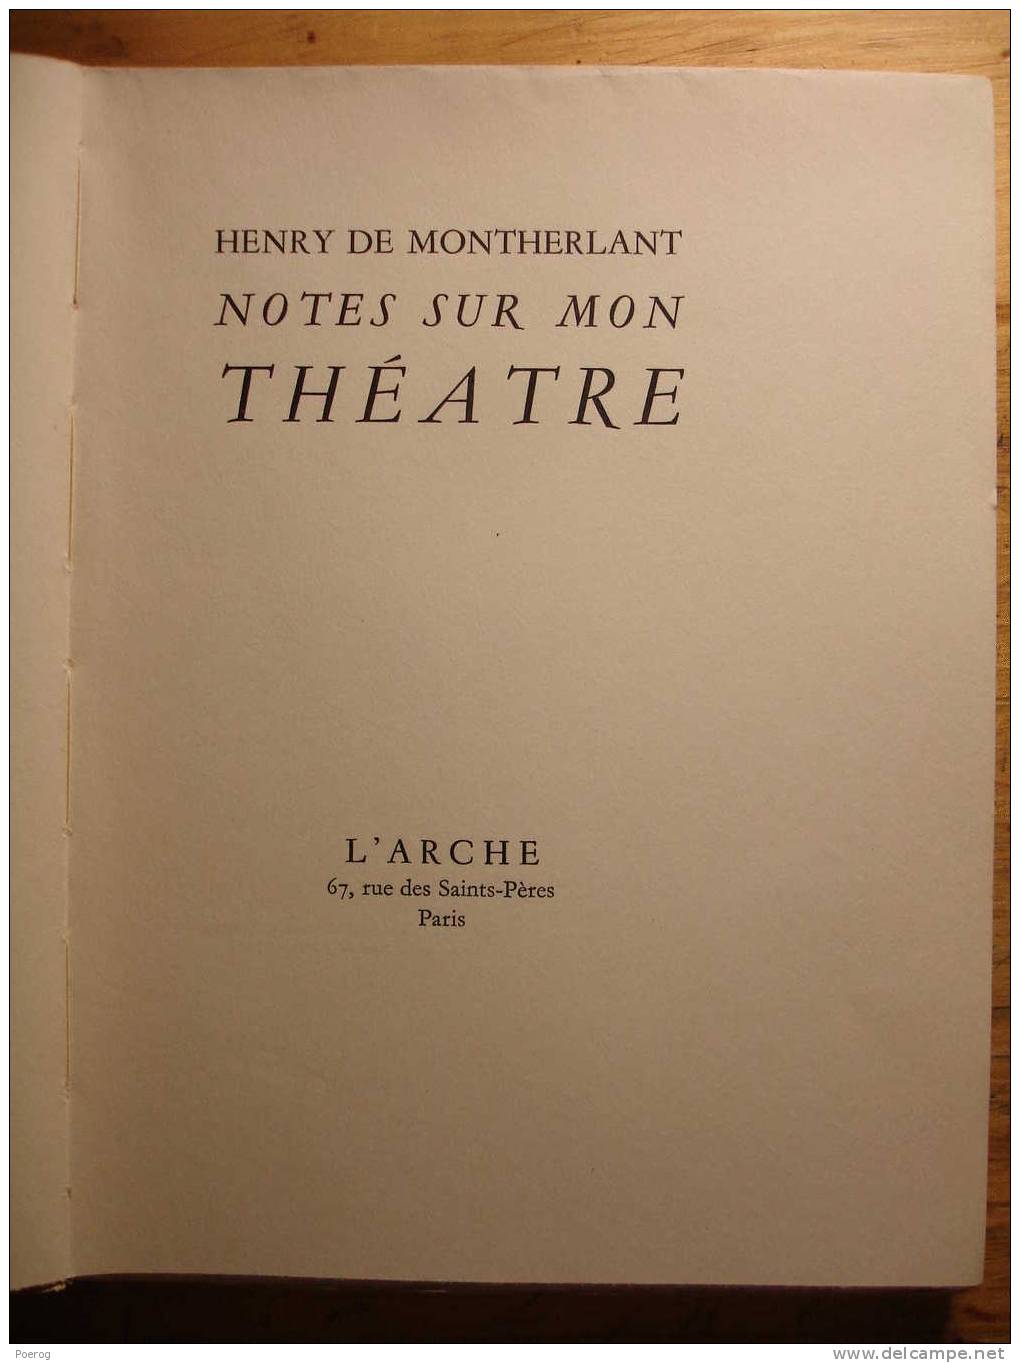 HENRY DE MONTHERLANT - NOTES SUR MON THEATRE - L'ARCHE EDITEUR - 1950 - Velin Alfa Navarre Numéroté - Franse Schrijvers